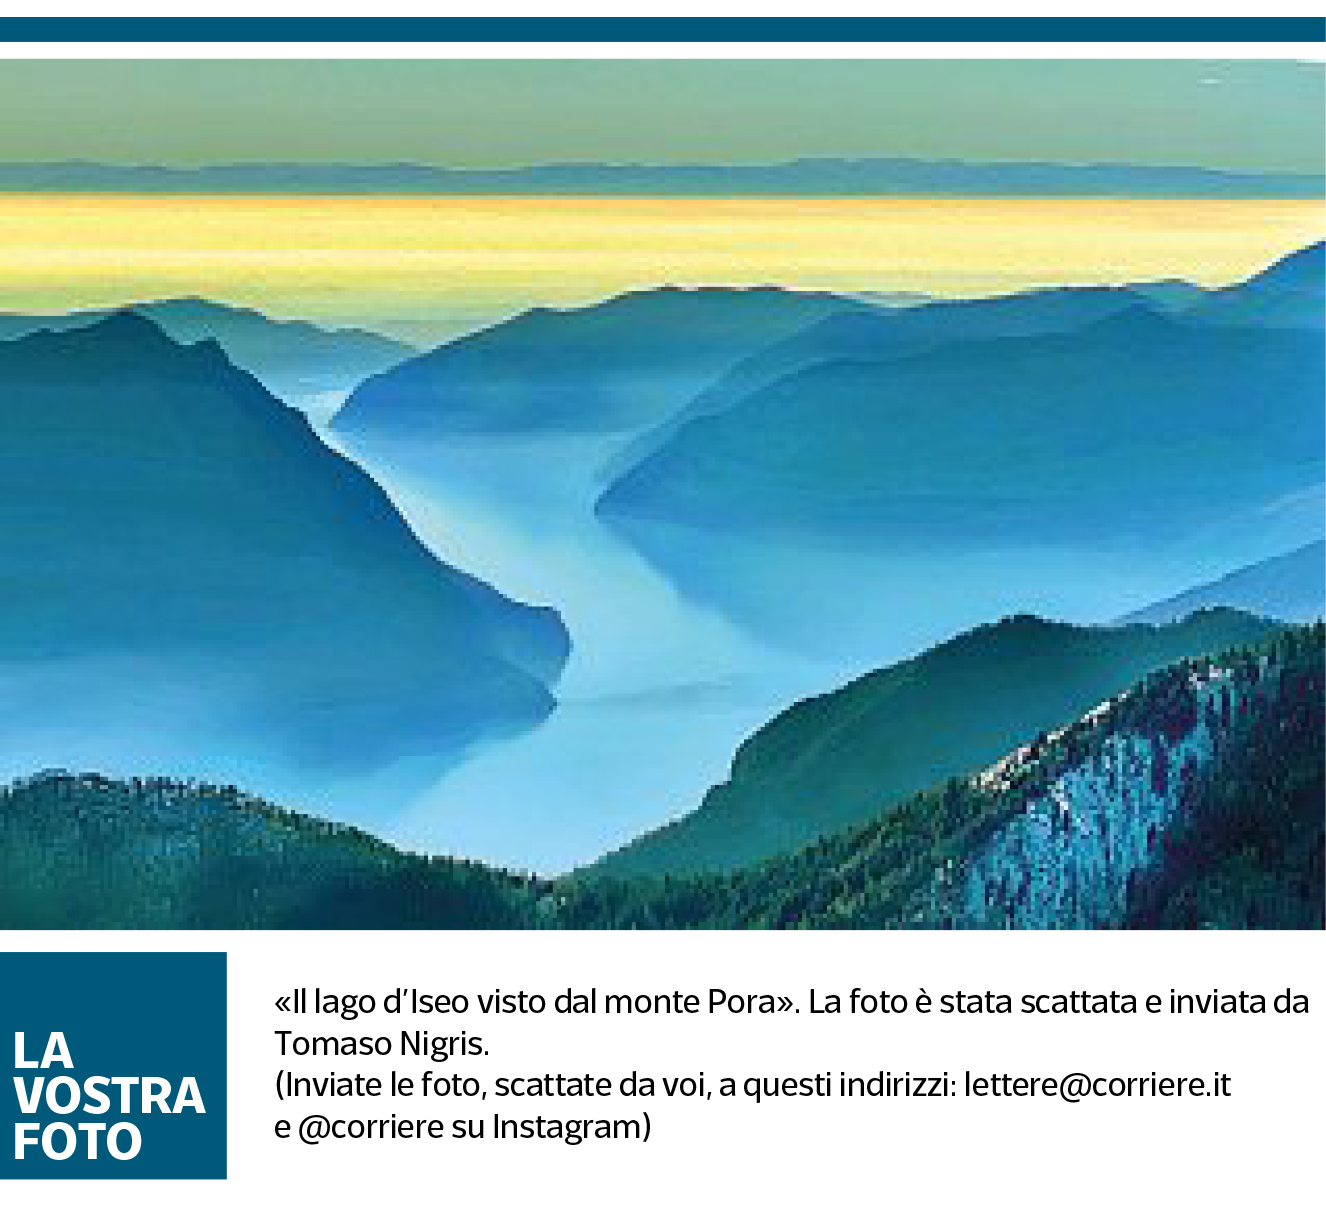 Articolo Corriere Della Sera con fotografia lago d'Iseo di Tomaso Nigris